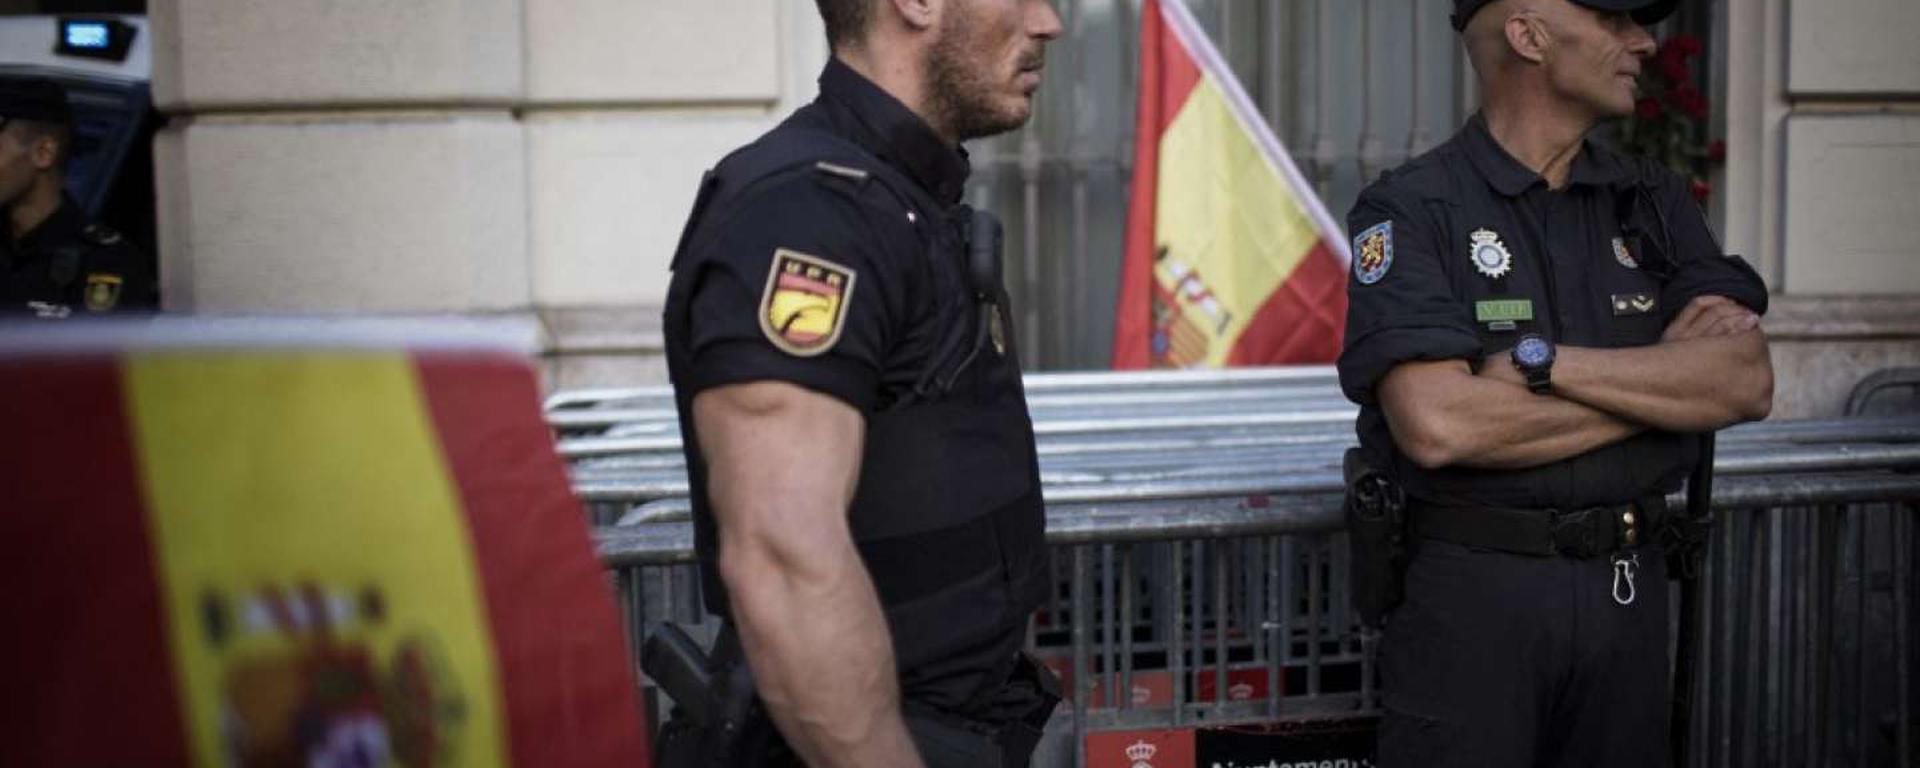 De relaciones íntimas a un policía gigoló: las revelaciones que complican a la policía española